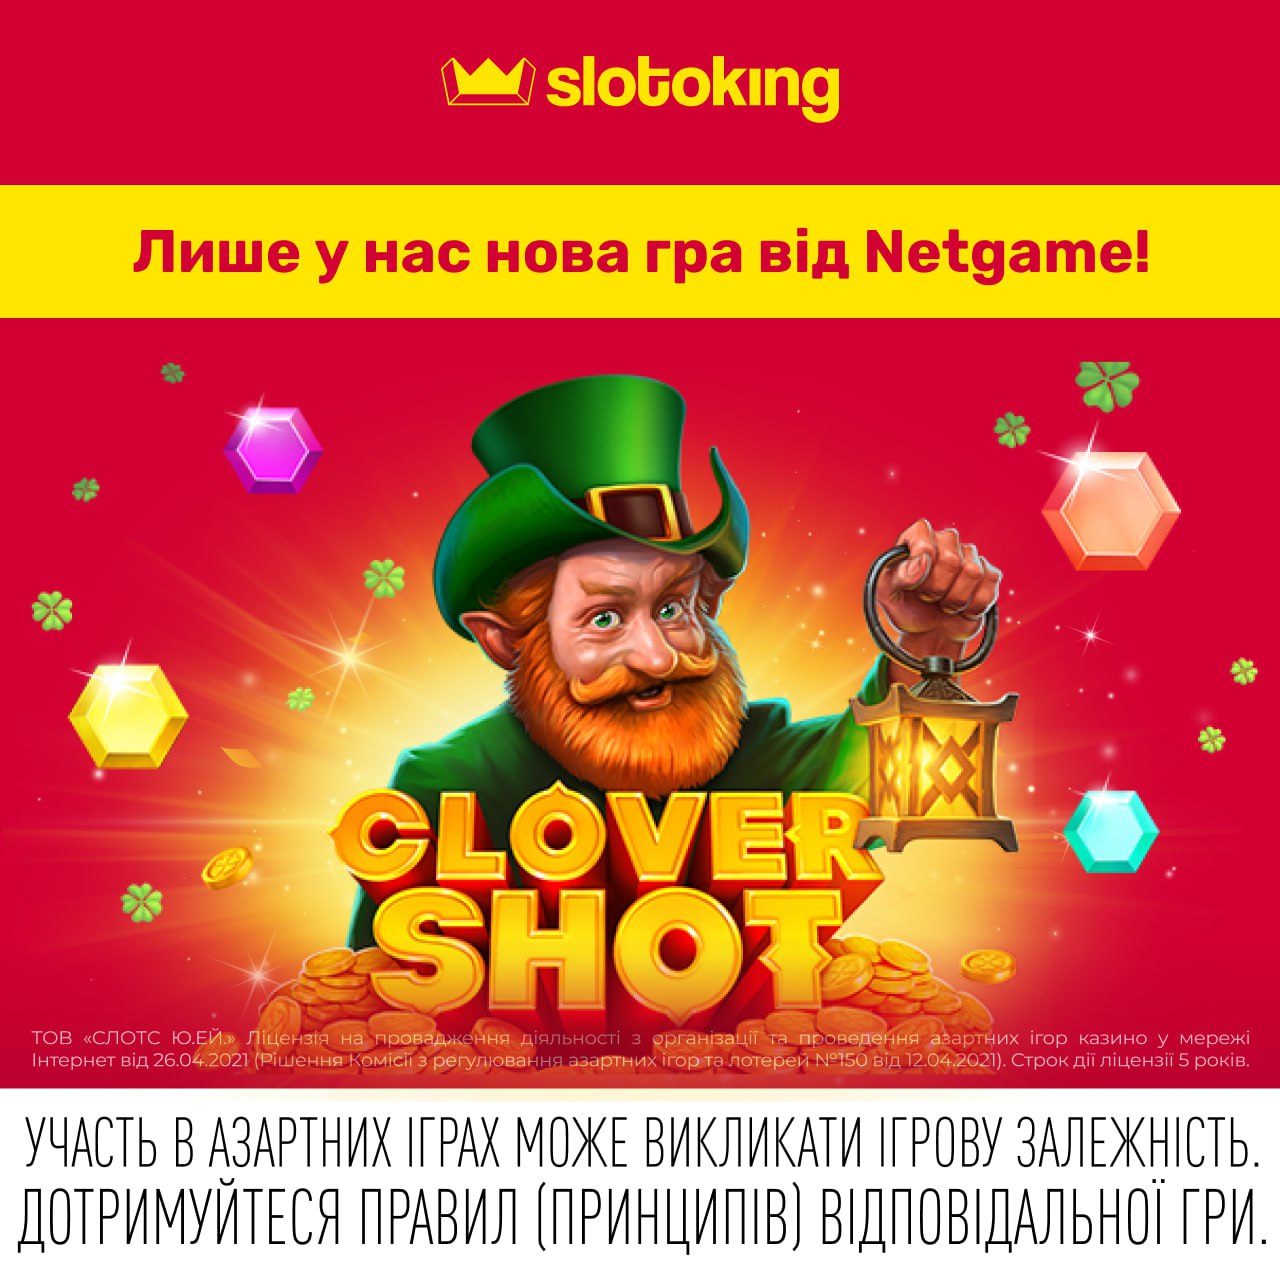 clovershot-vid-netgame-eksklyuzivno-na-slotoking